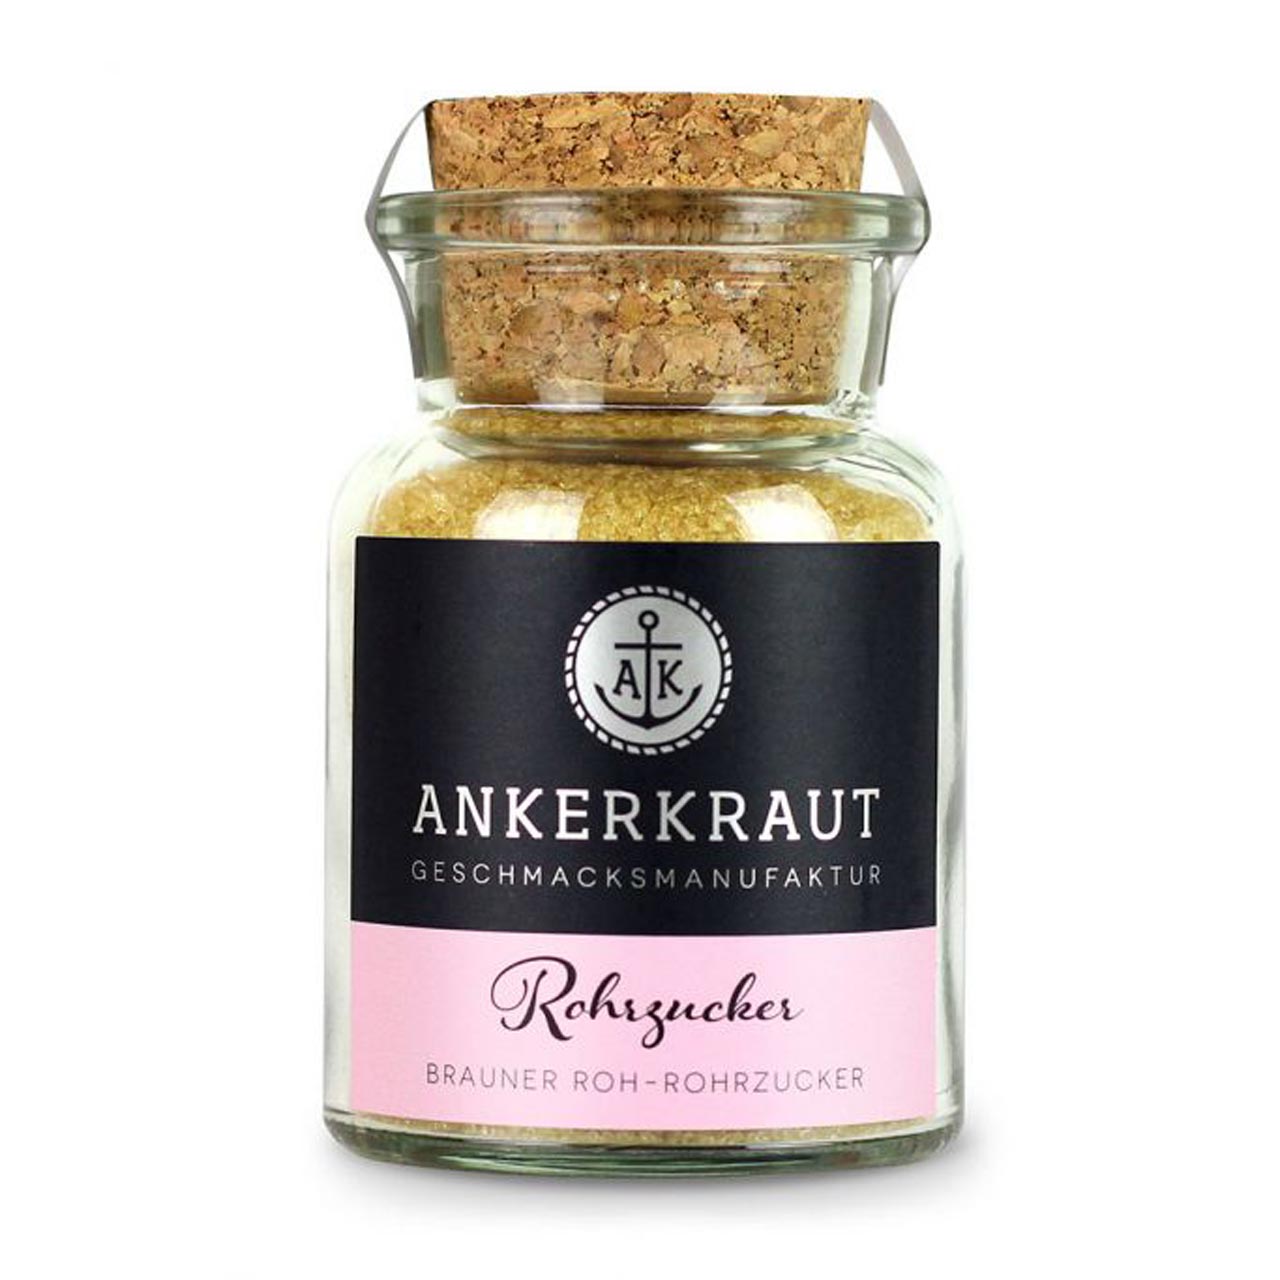 Ankerkraut Roh-Rohrzucker